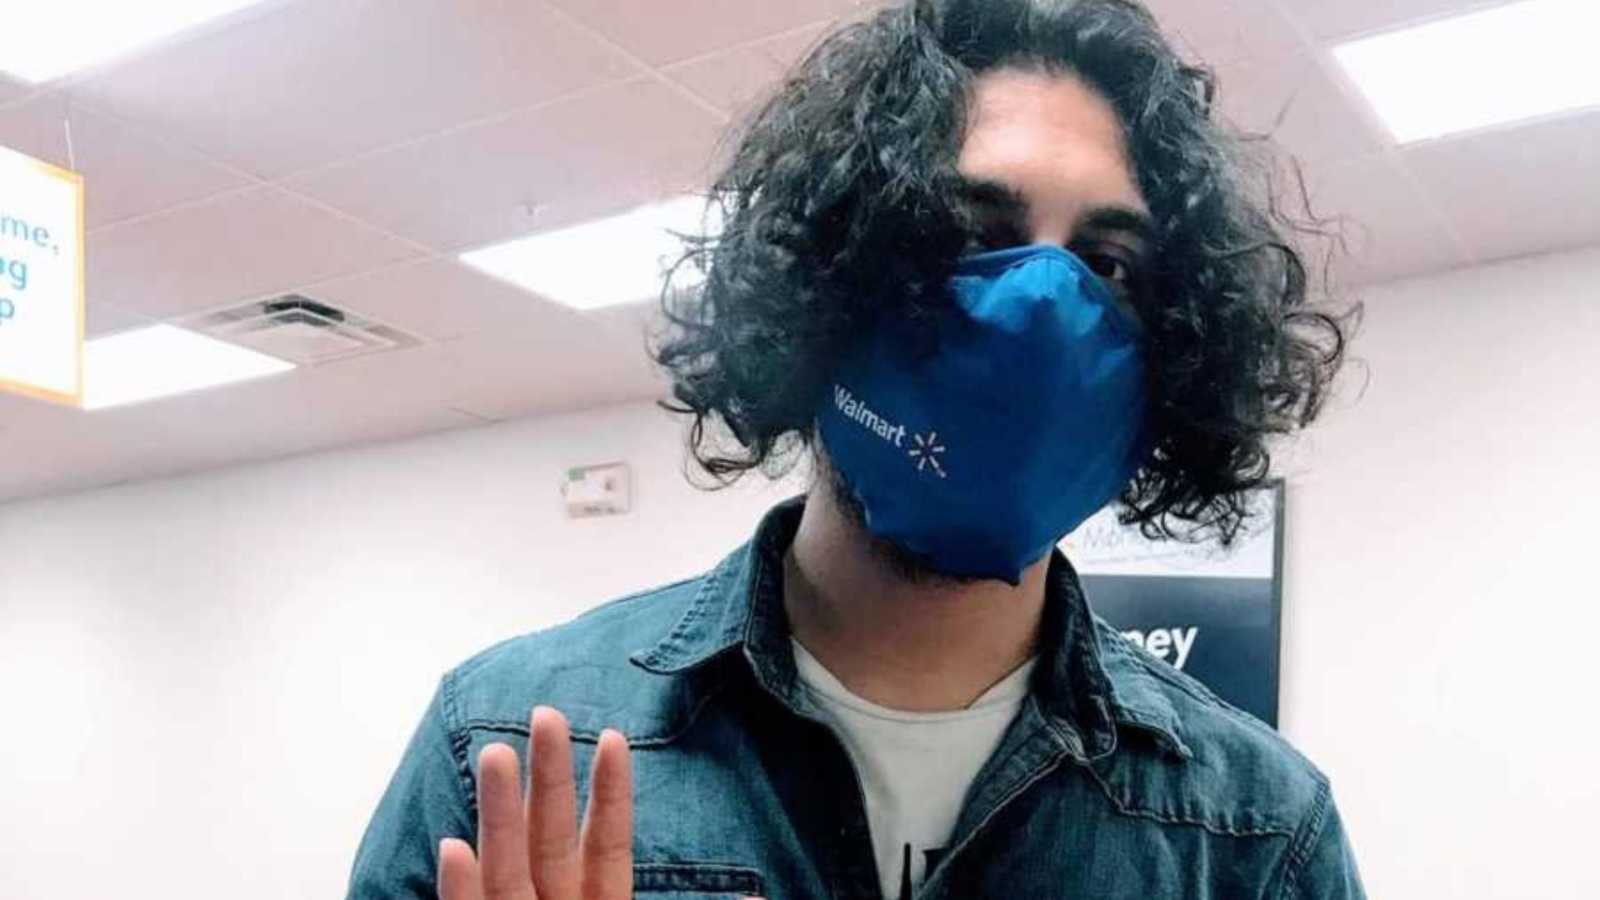 Walmart employee wearing mask while waving